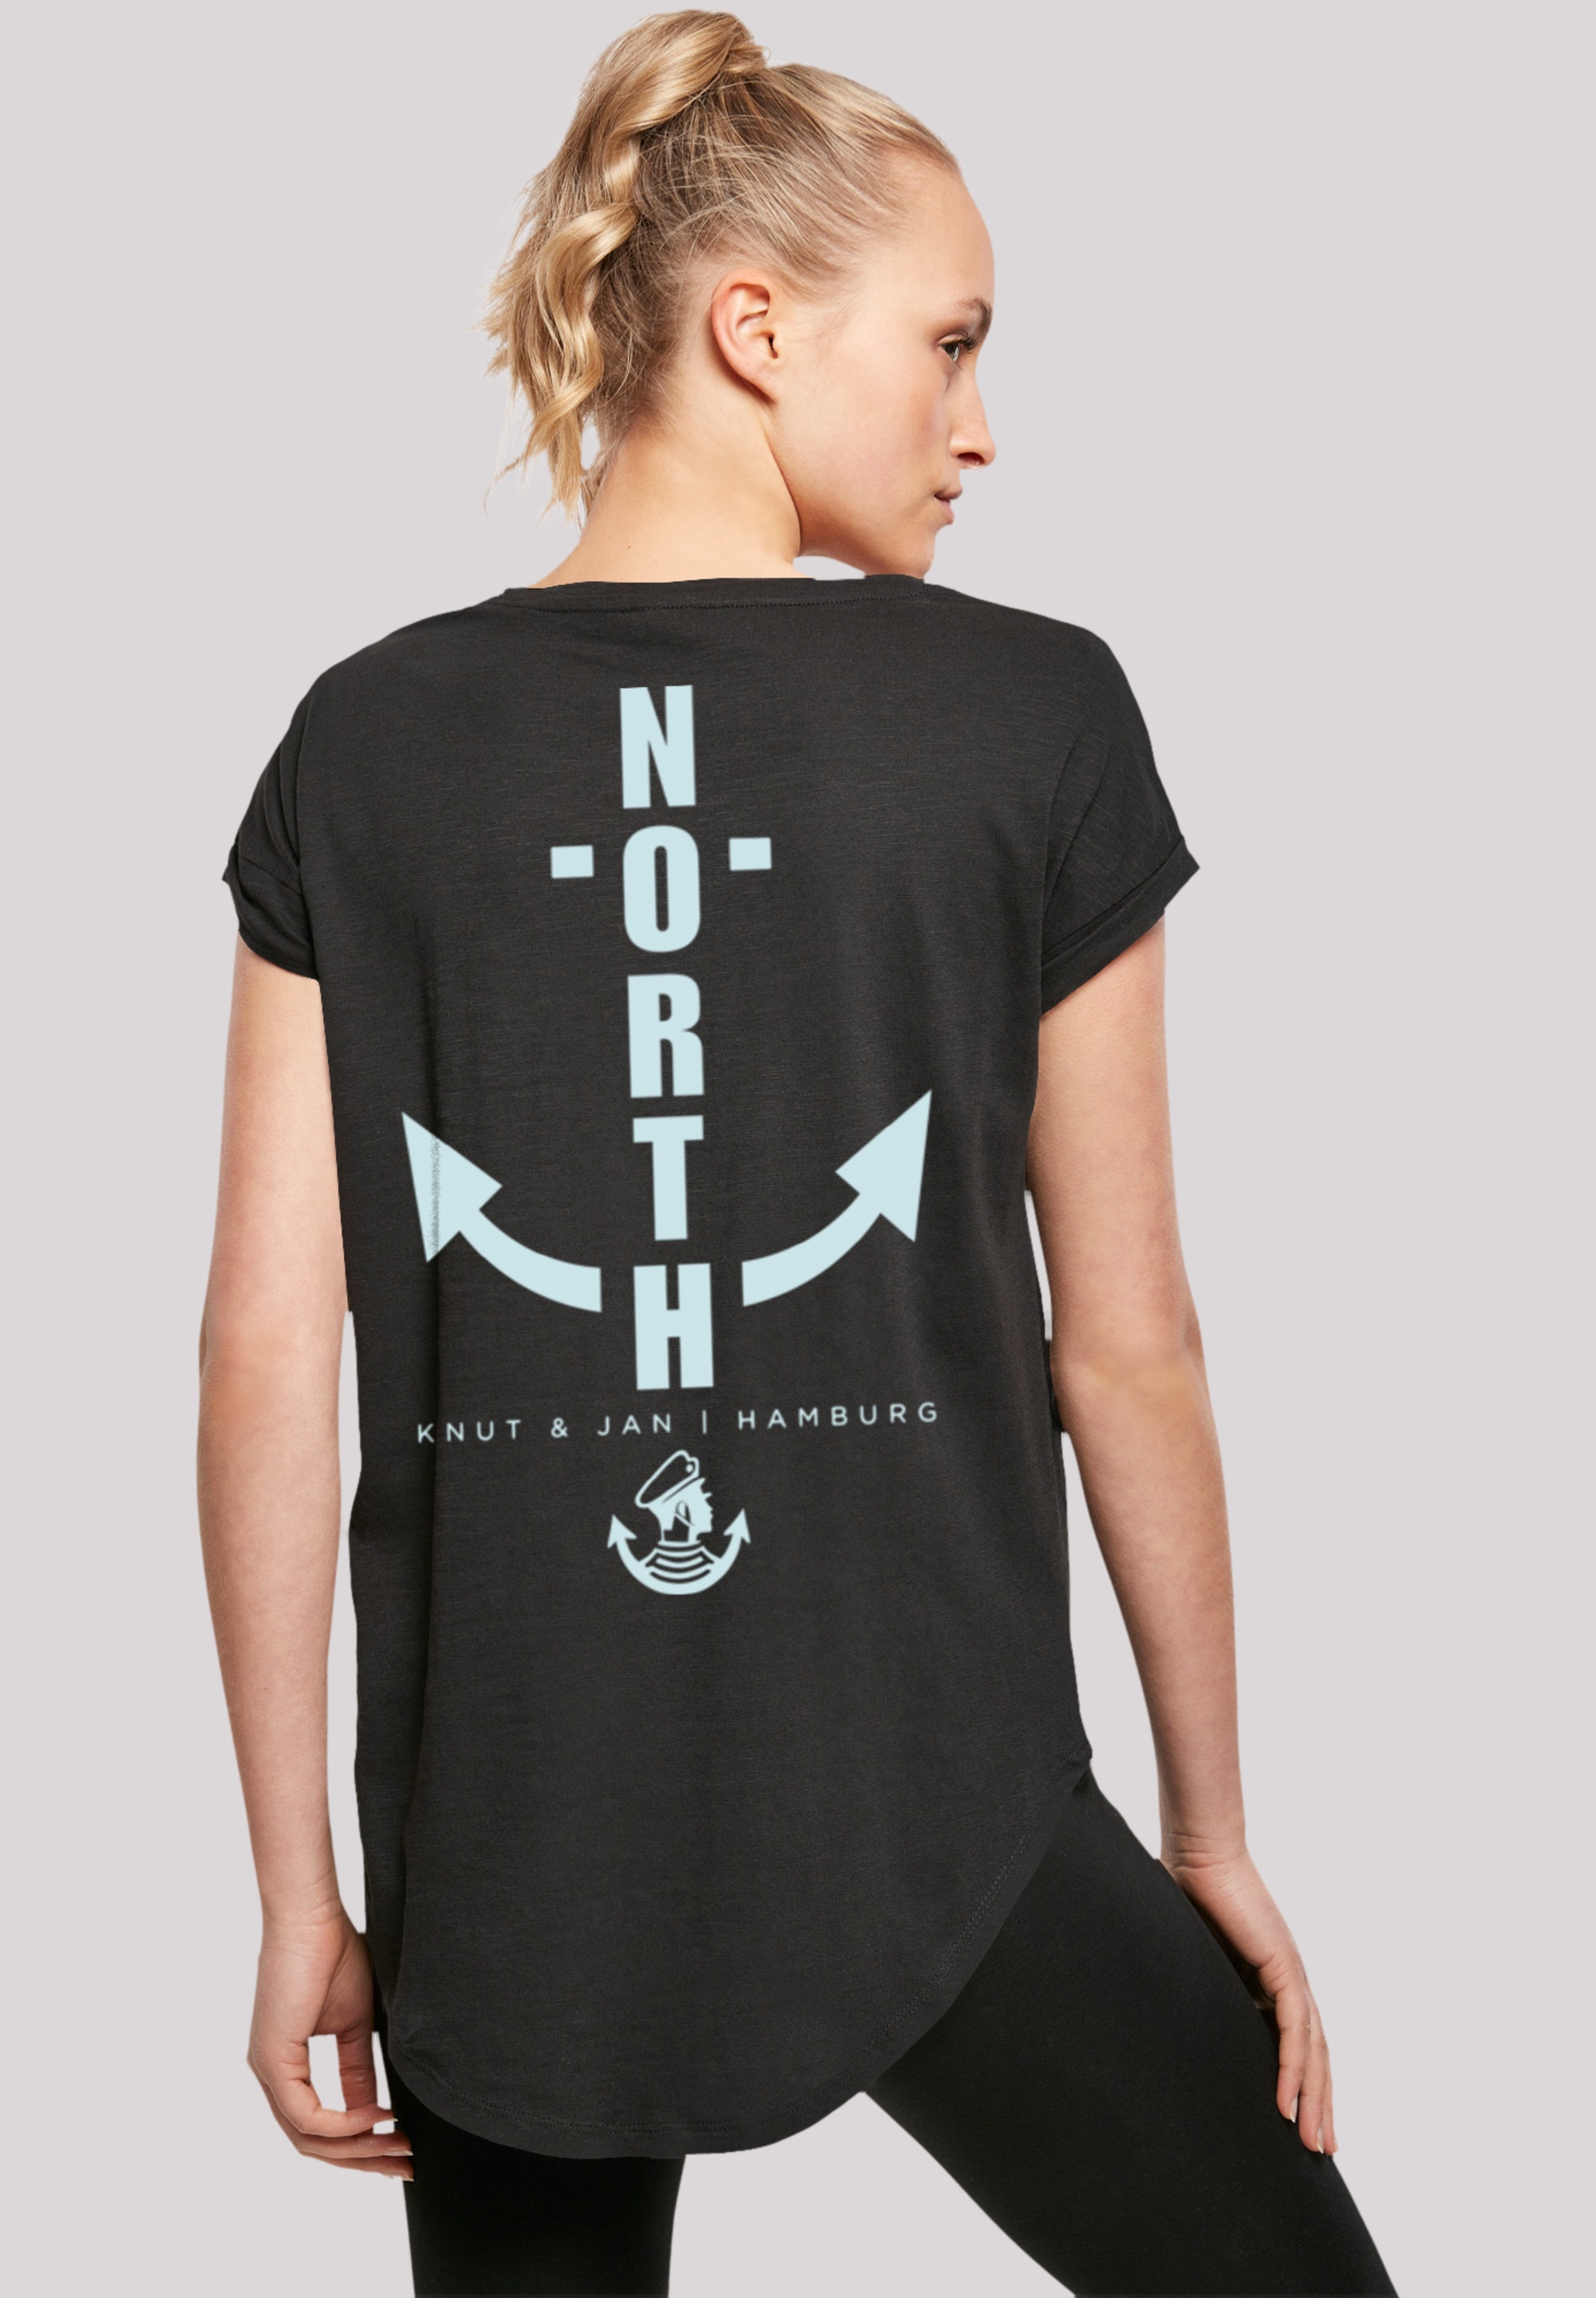 & »North Jan Hamburg«, T-Shirt Print Anker F4NT4STIC Knut kaufen